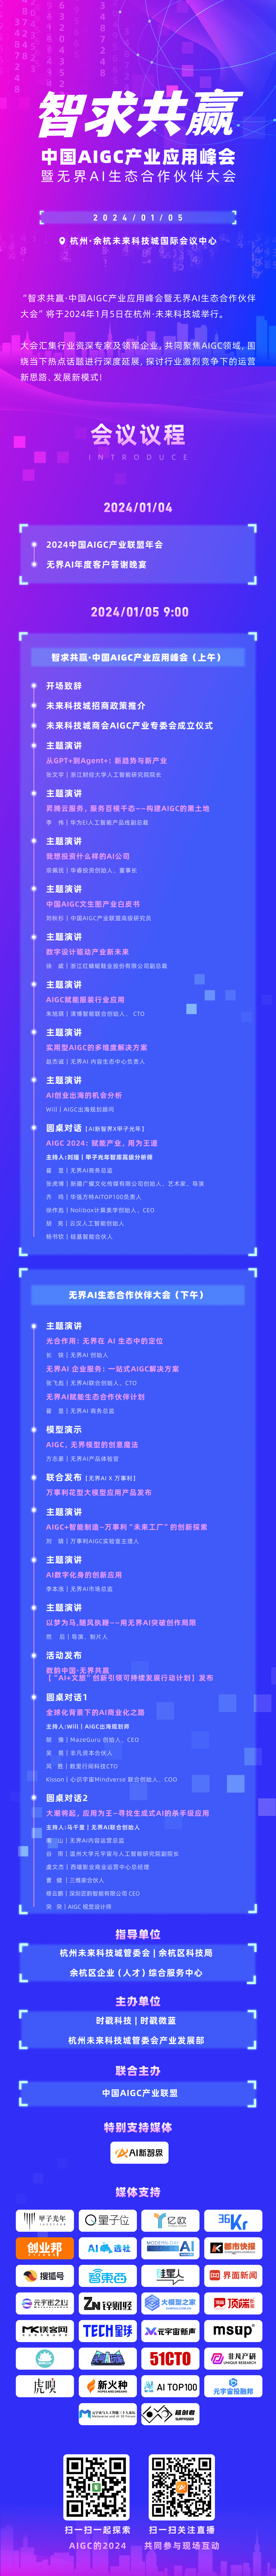 人人有礼！杭州“千人 AIGC大会”，集齐“吃喝玩乐”的奖品名单来了